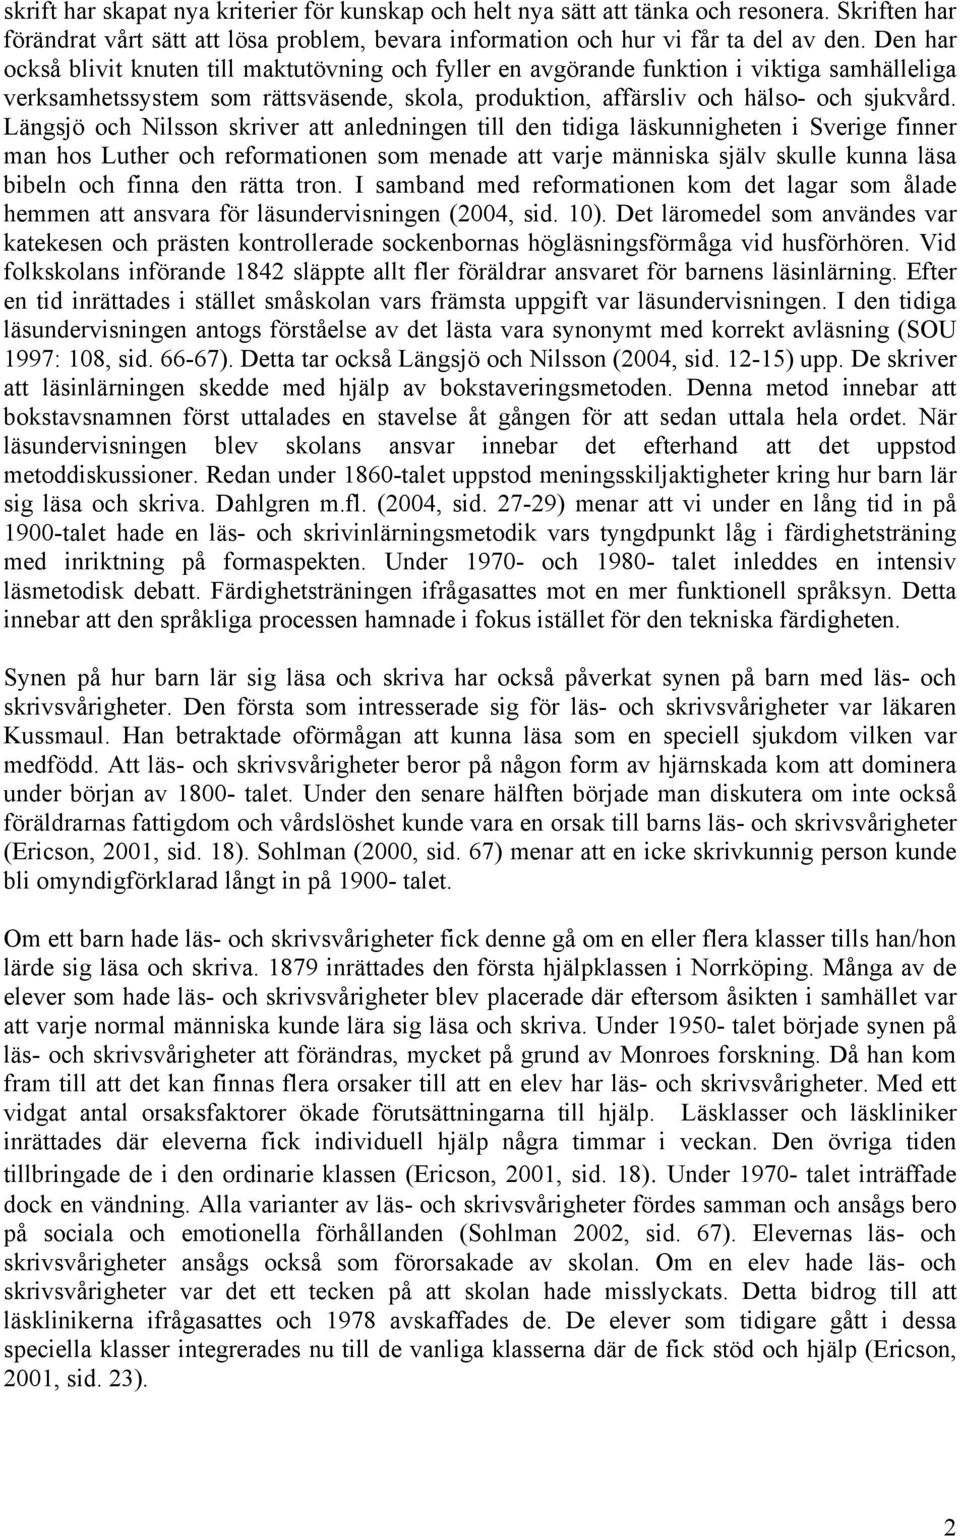 Längsjö och Nilsson skriver att anledningen till den tidiga läskunnigheten i Sverige finner man hos Luther och reformationen som menade att varje människa själv skulle kunna läsa bibeln och finna den